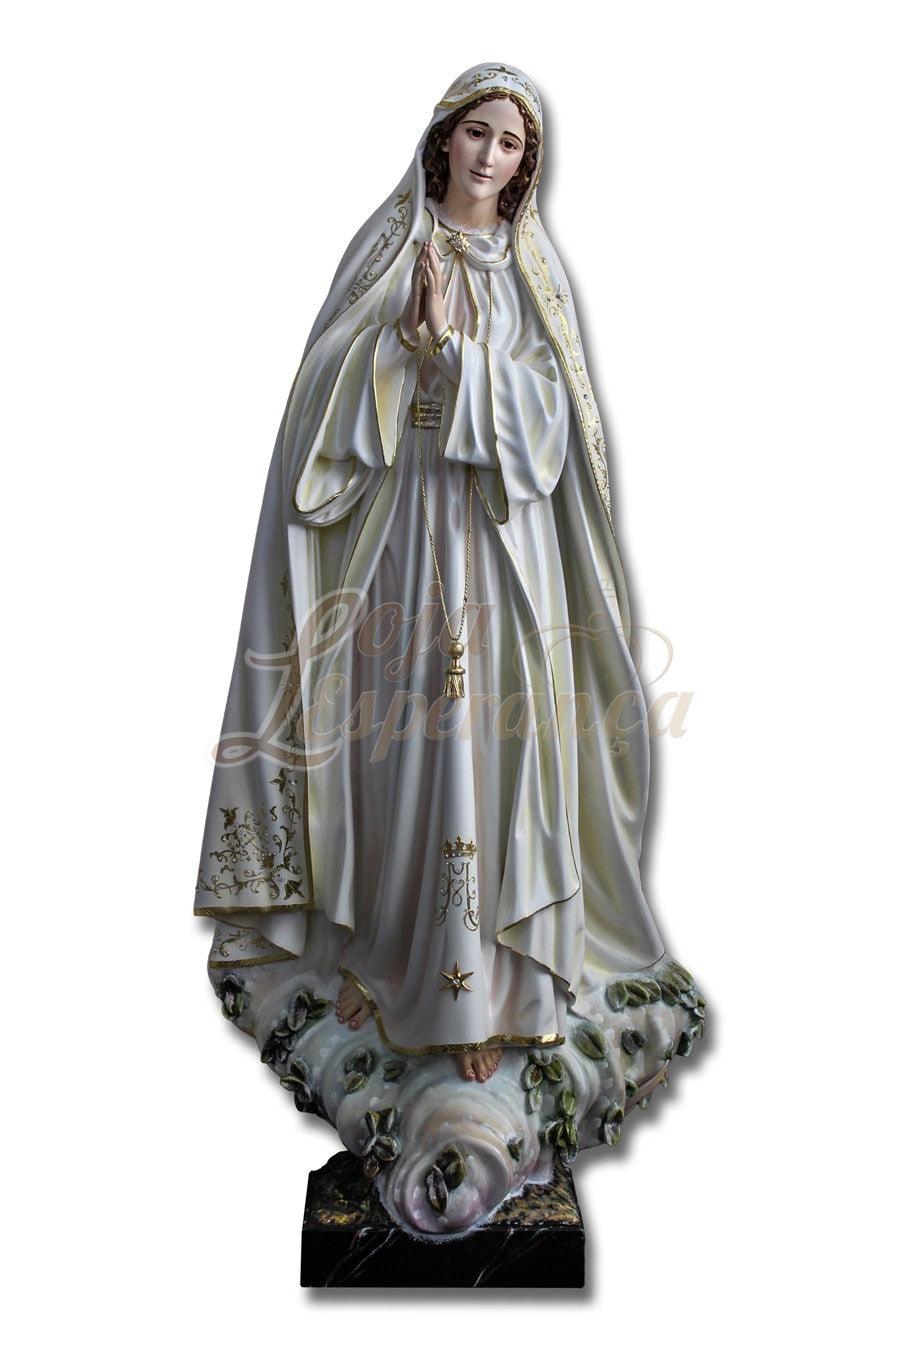 Our Lady of Fatima - Azinheira